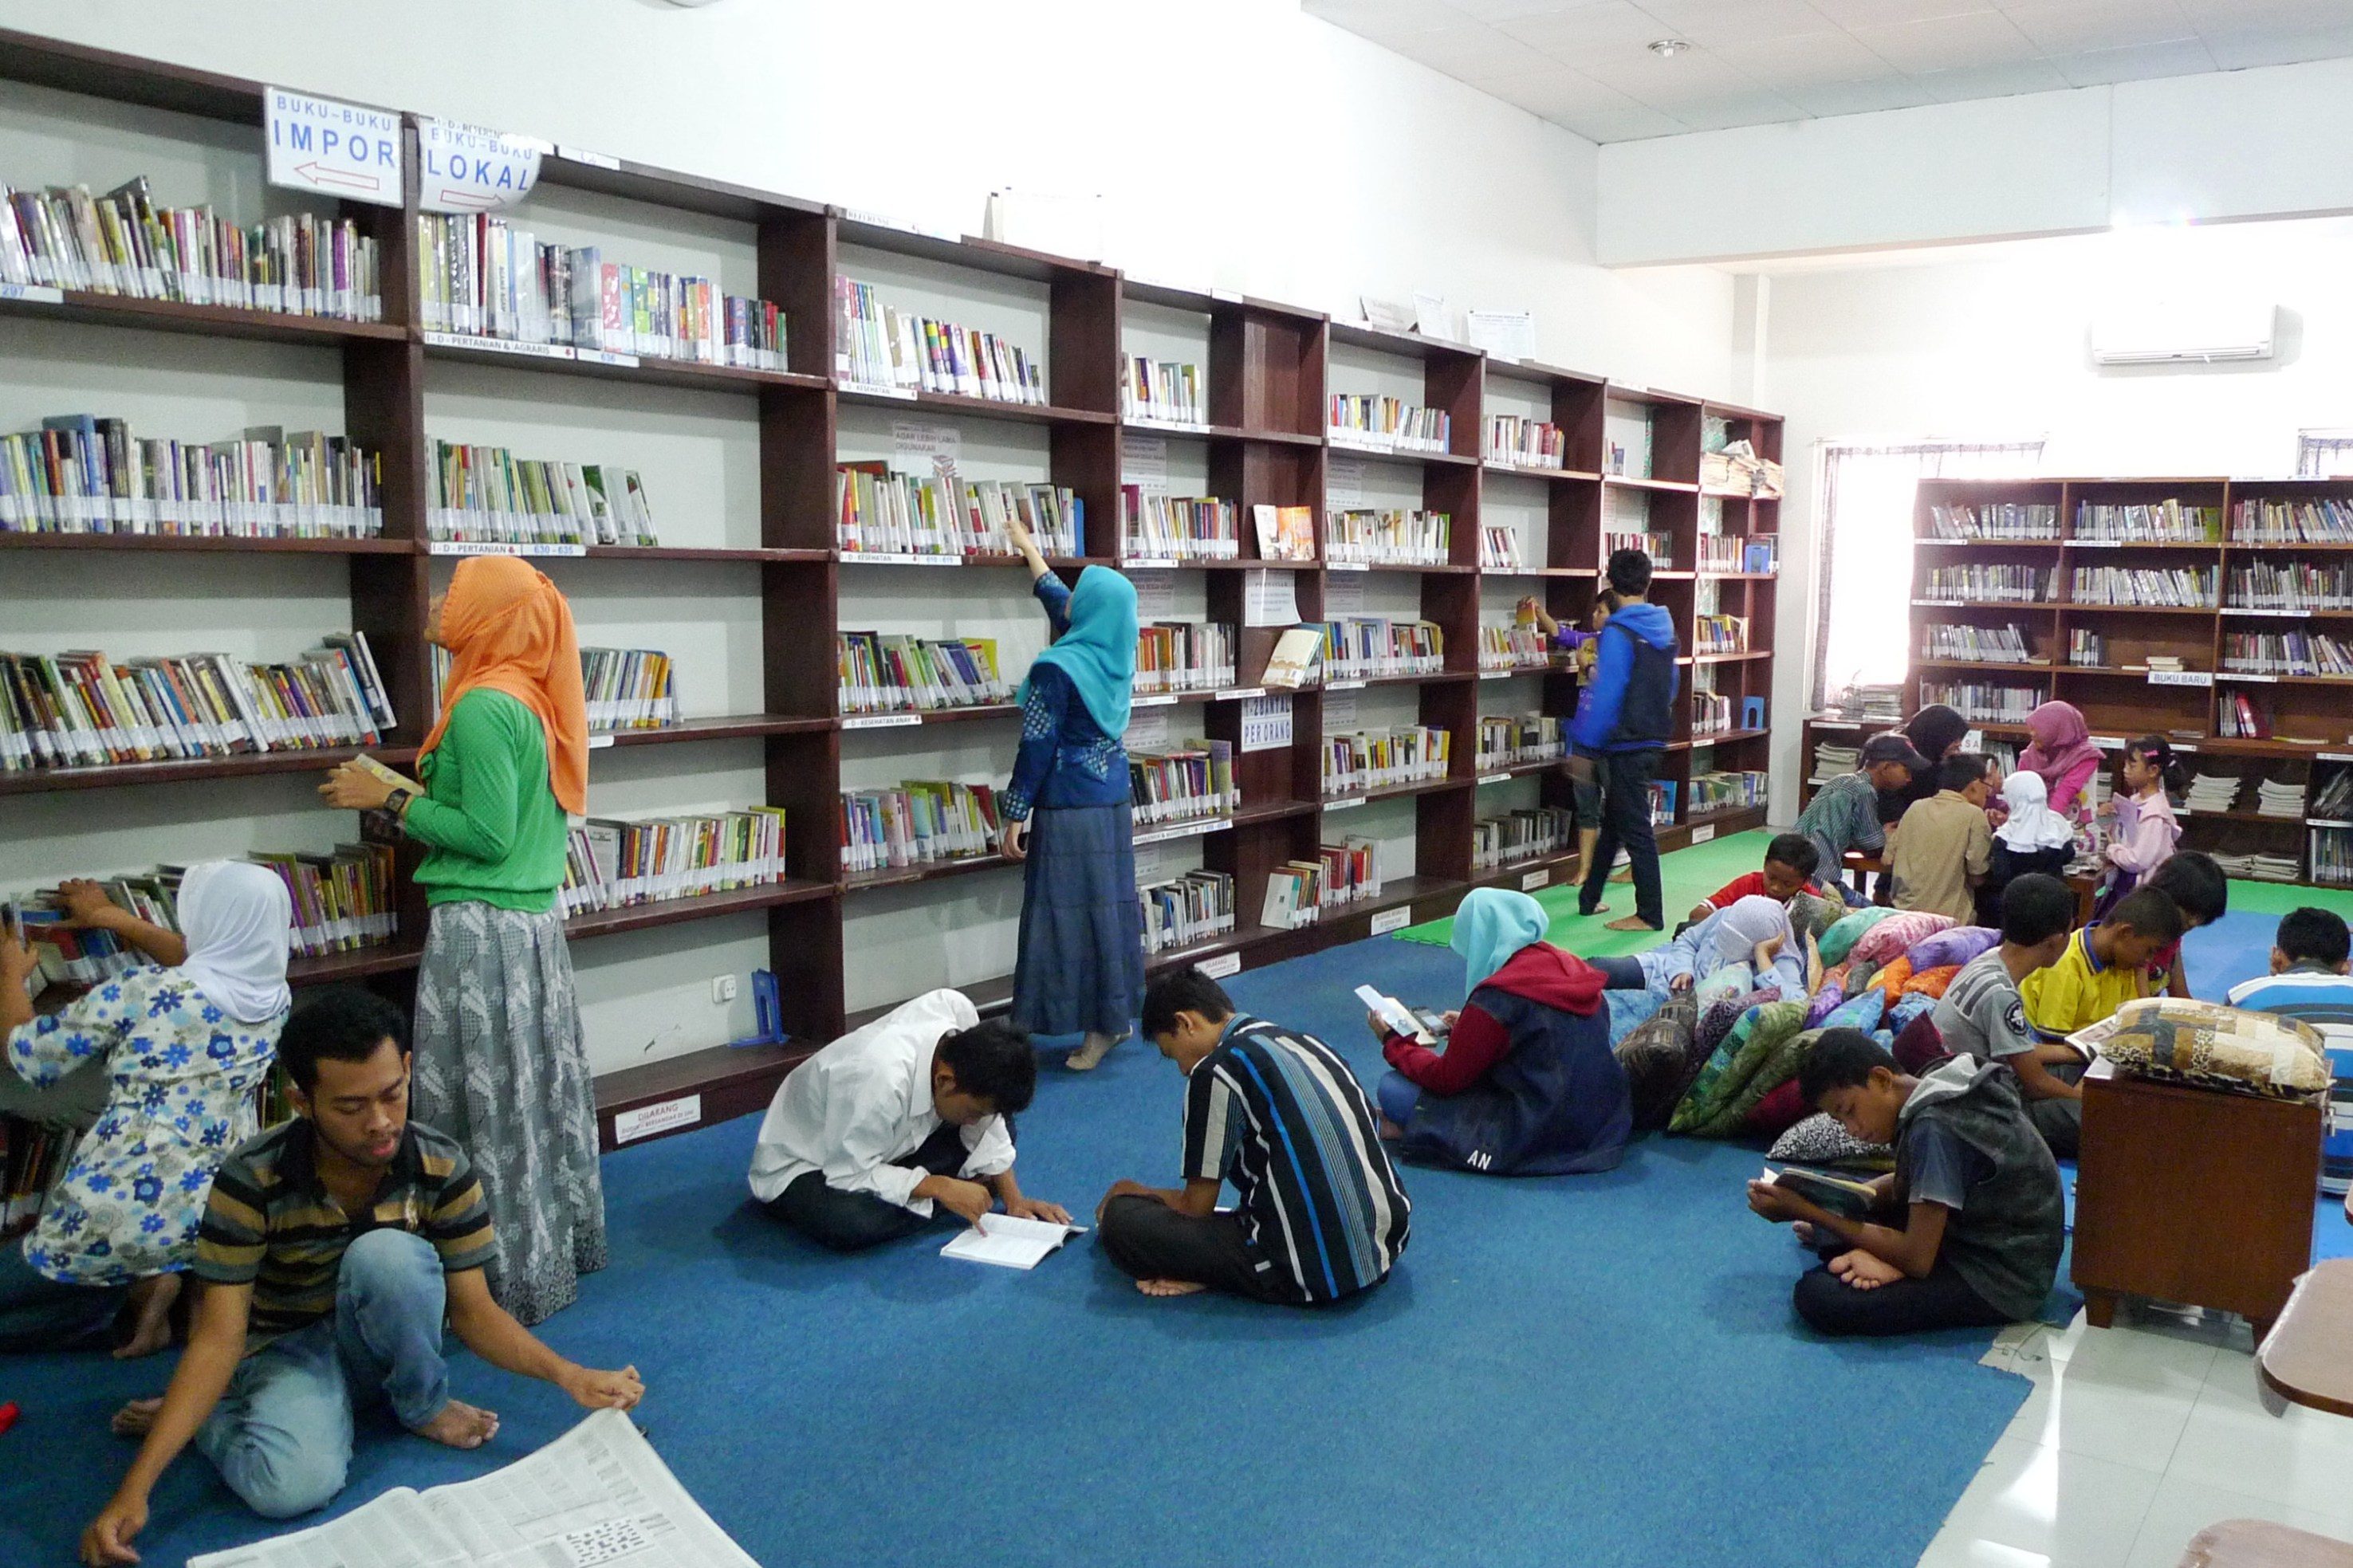 Ganesa, perpustakaan umum gratis di Solo. Foto oleh Ari Susanto/Rappler 